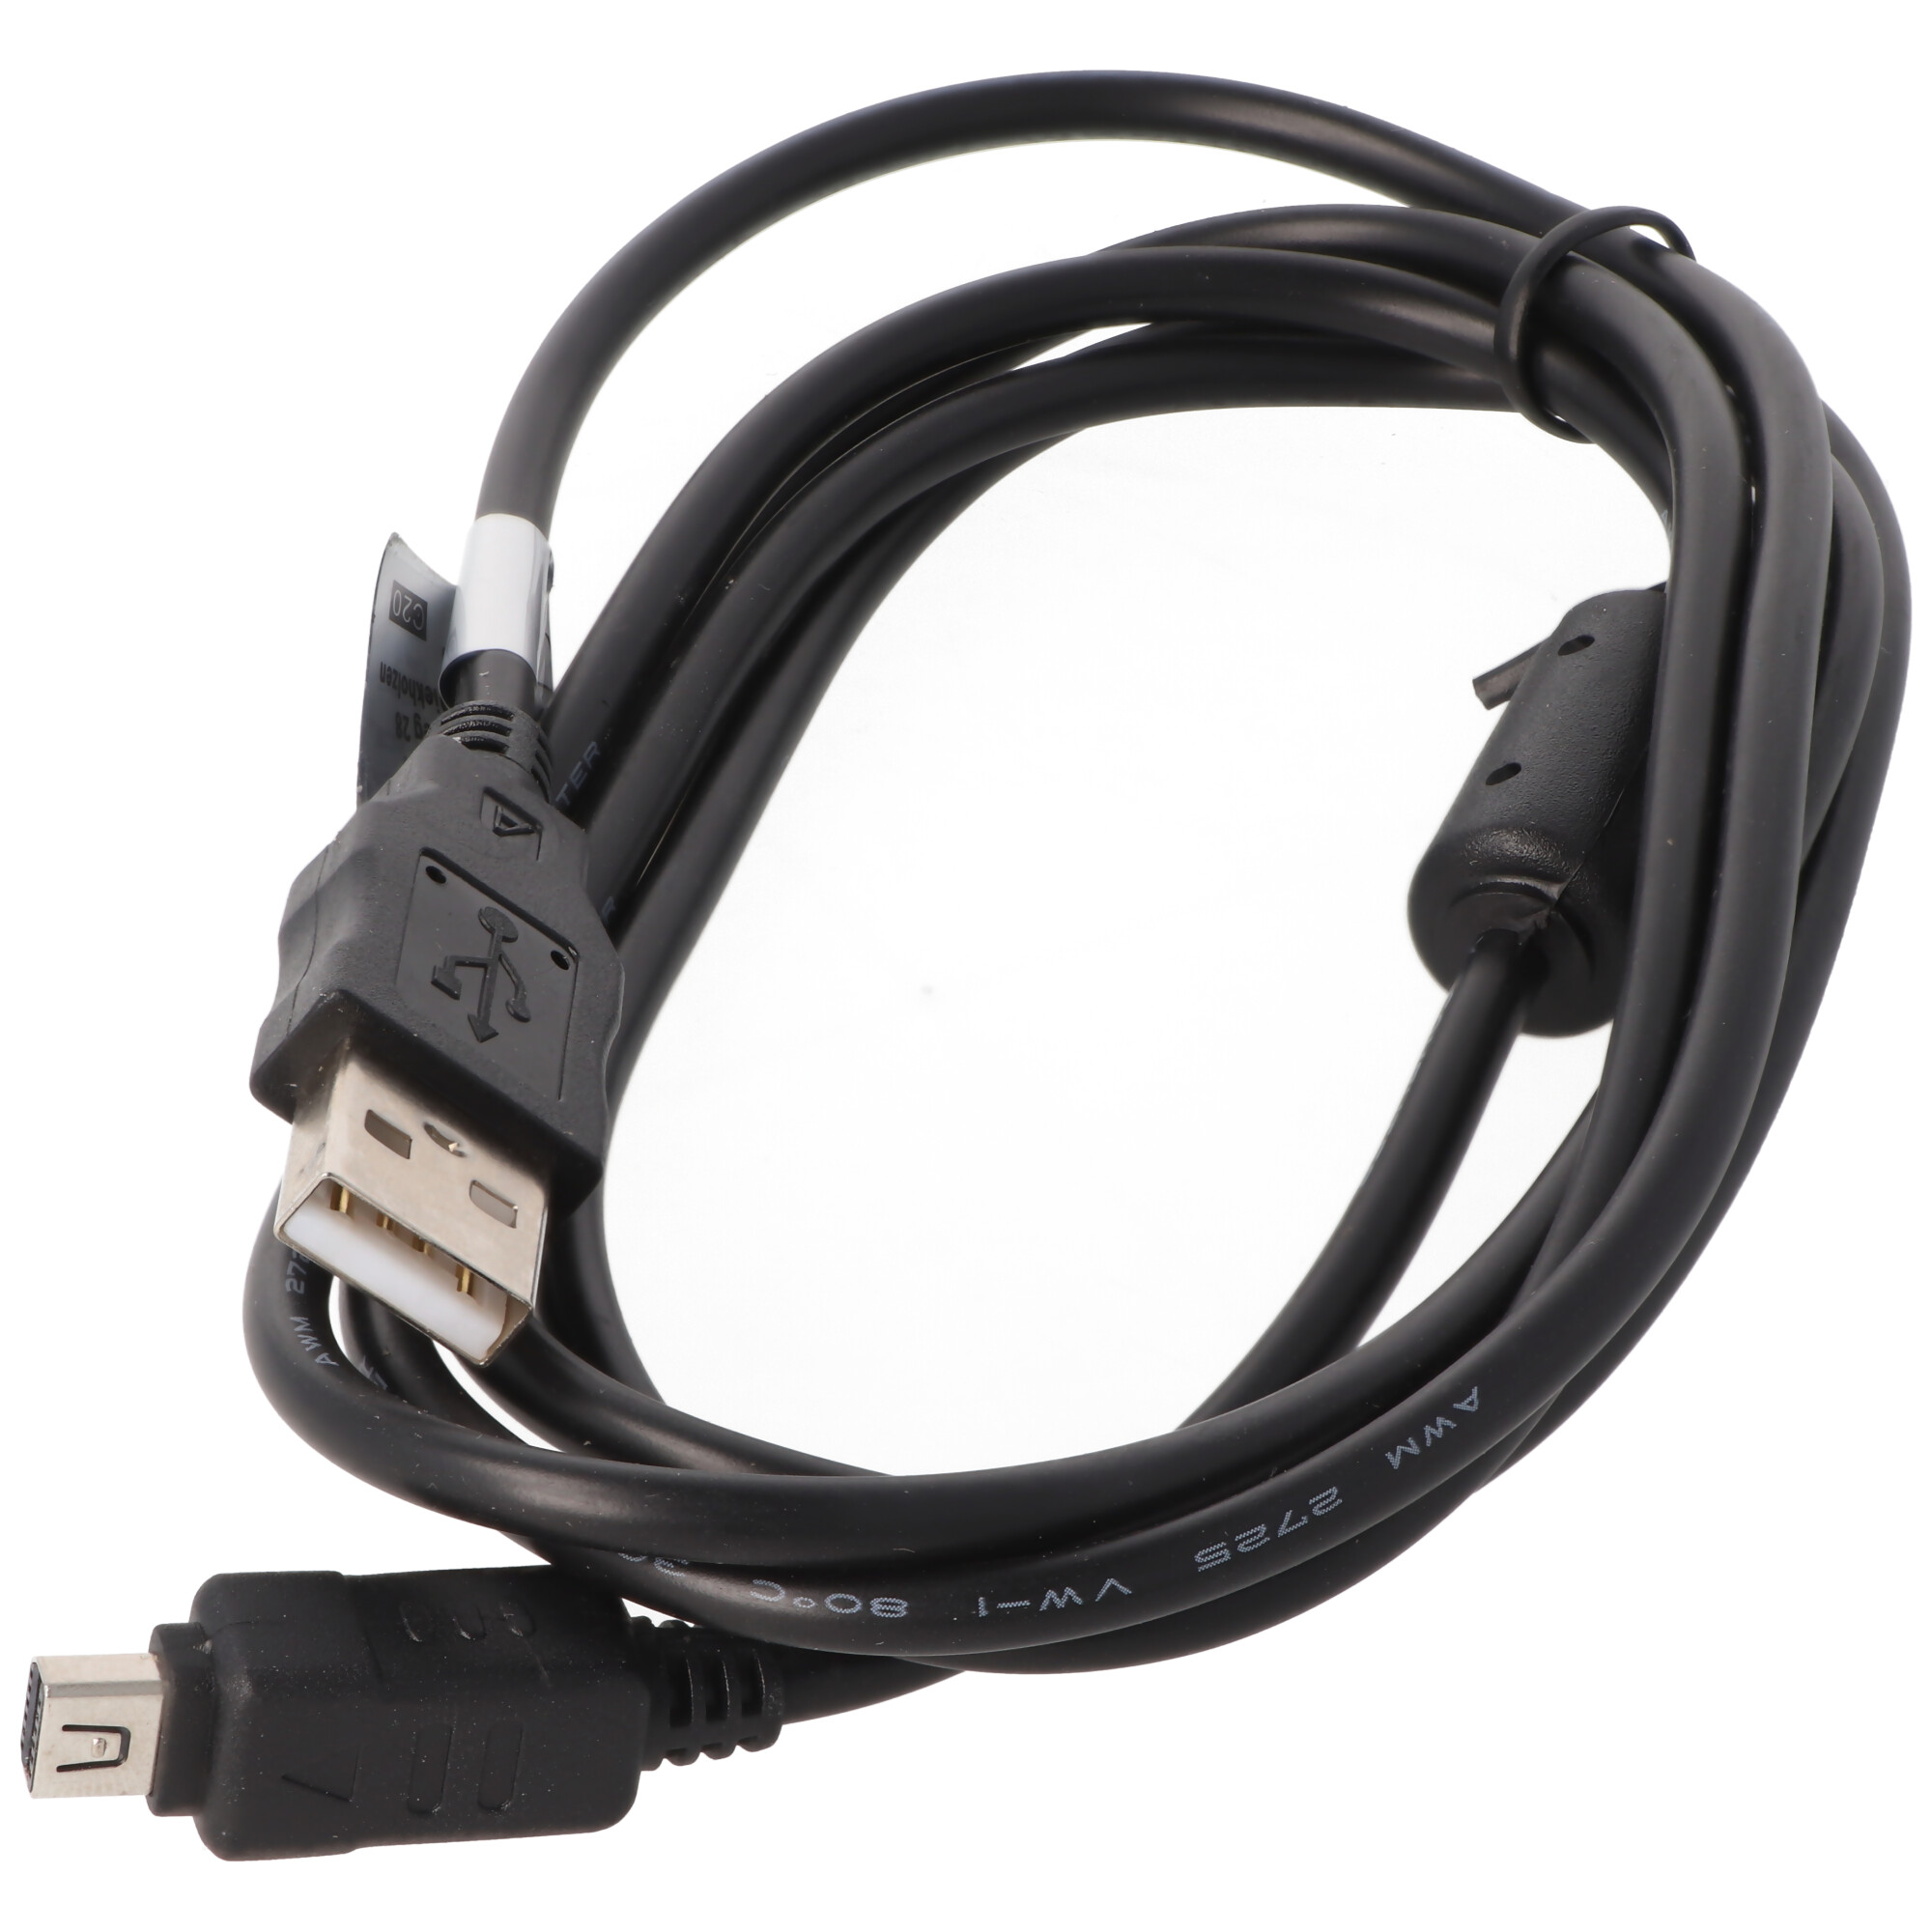 USB-Kabel passend für das Olympus CB-USB6 USB Kabel zum Datentransfer